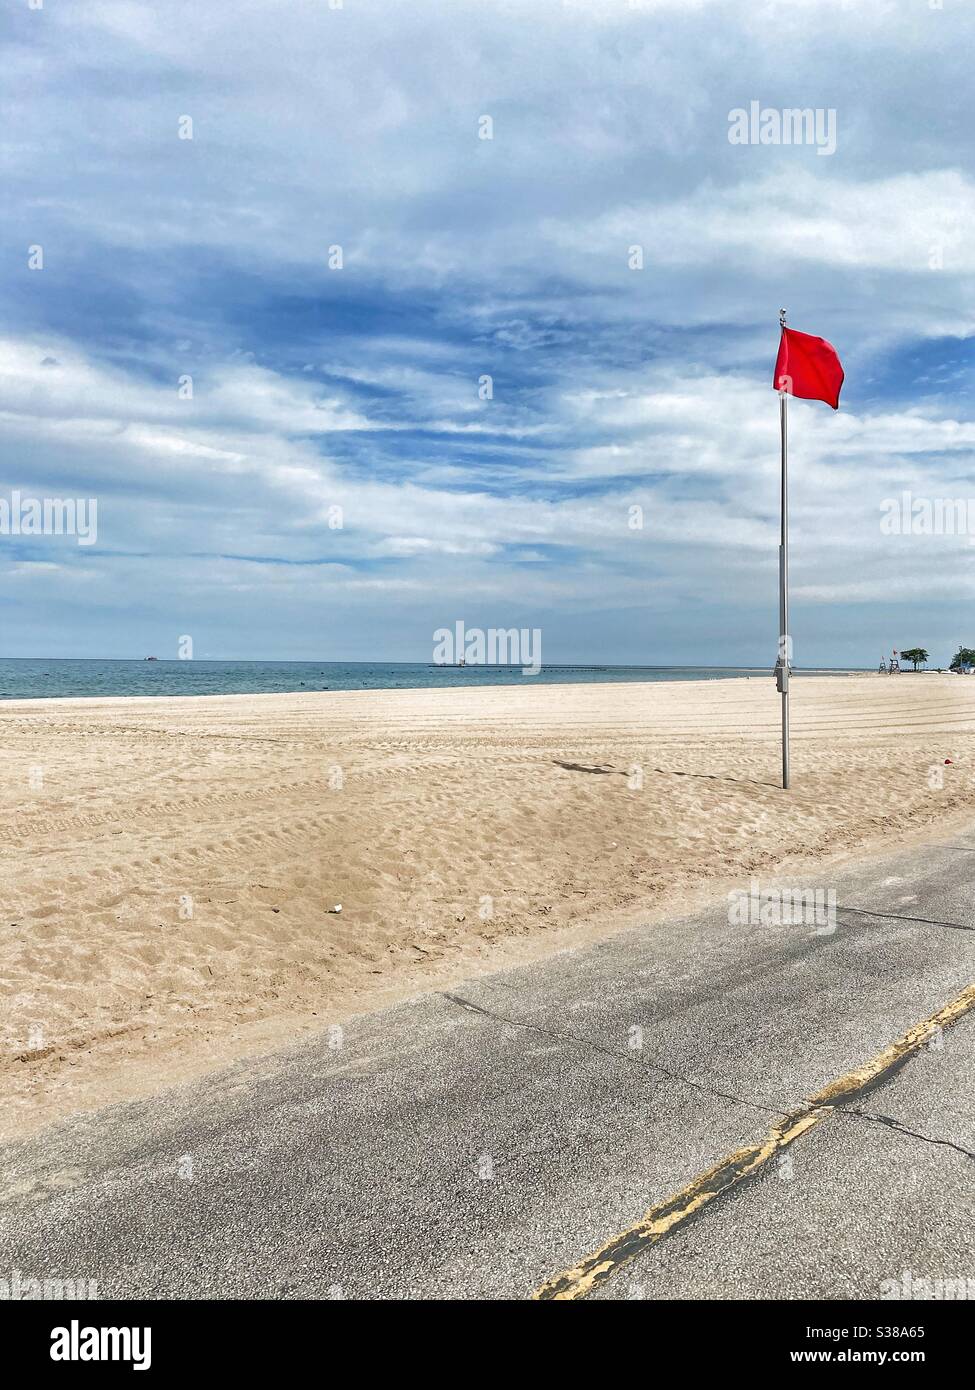 Spiaggia vuota con bandiera rossa che proibisce il nuoto. La spiaggia è chiusa e non è consentito a nessuno. Foto Stock